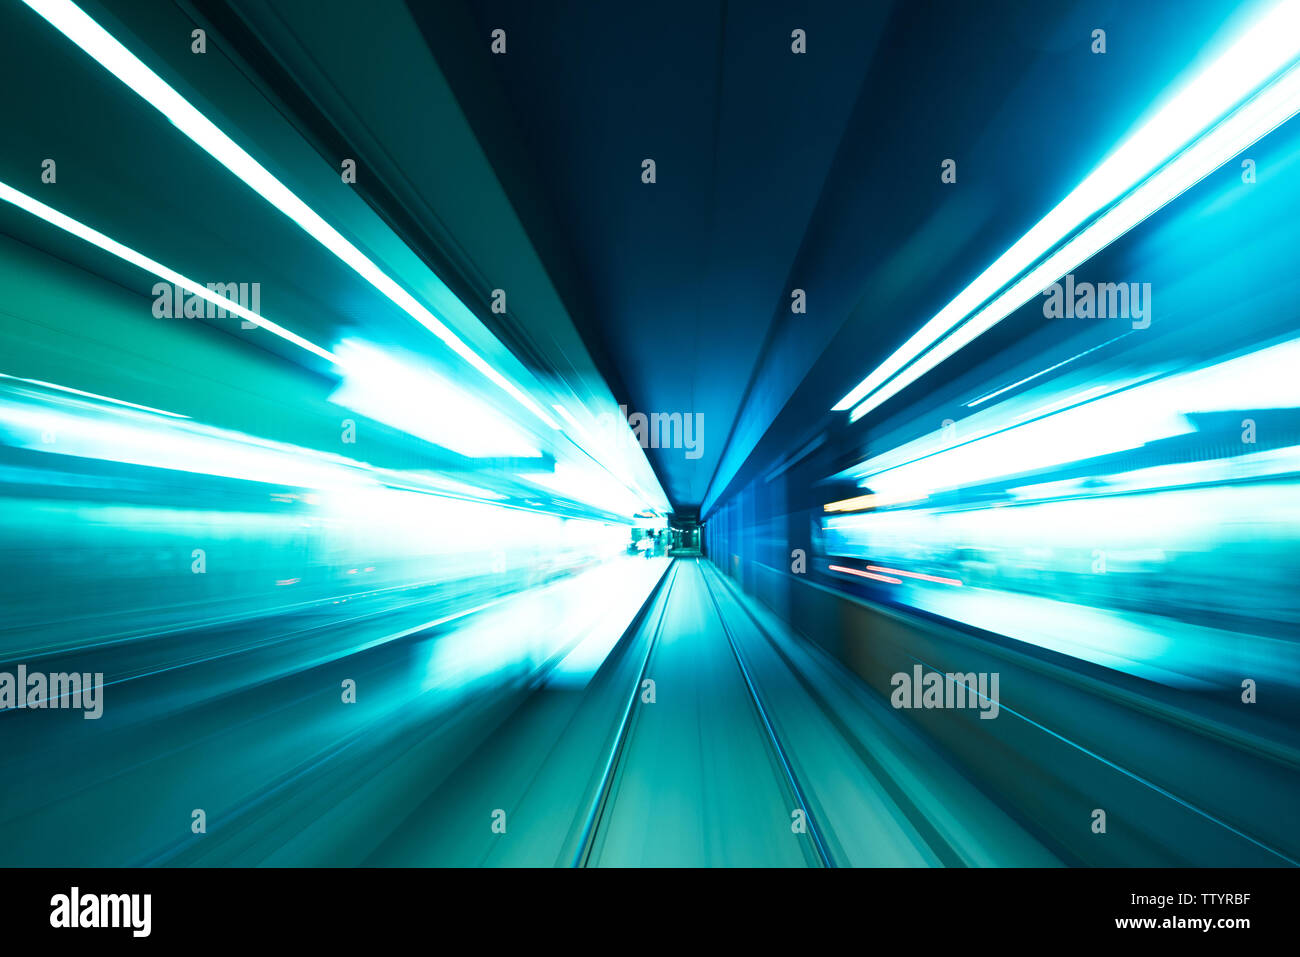 Speed underground railway motion blur Stock Photo